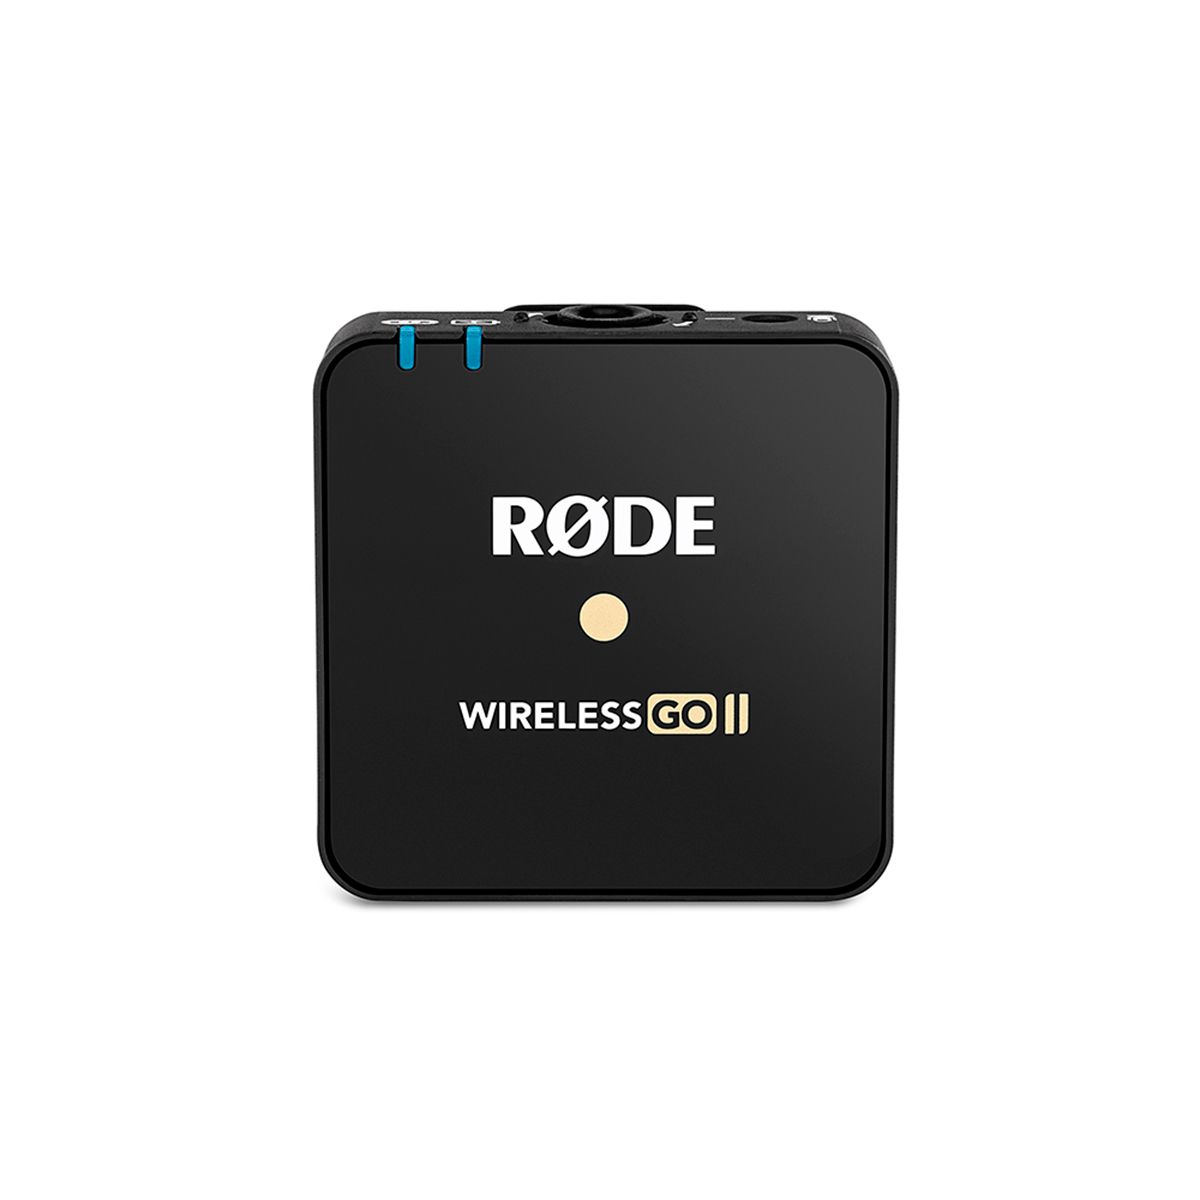 RODE Wireless GO II ไมโครโฟน